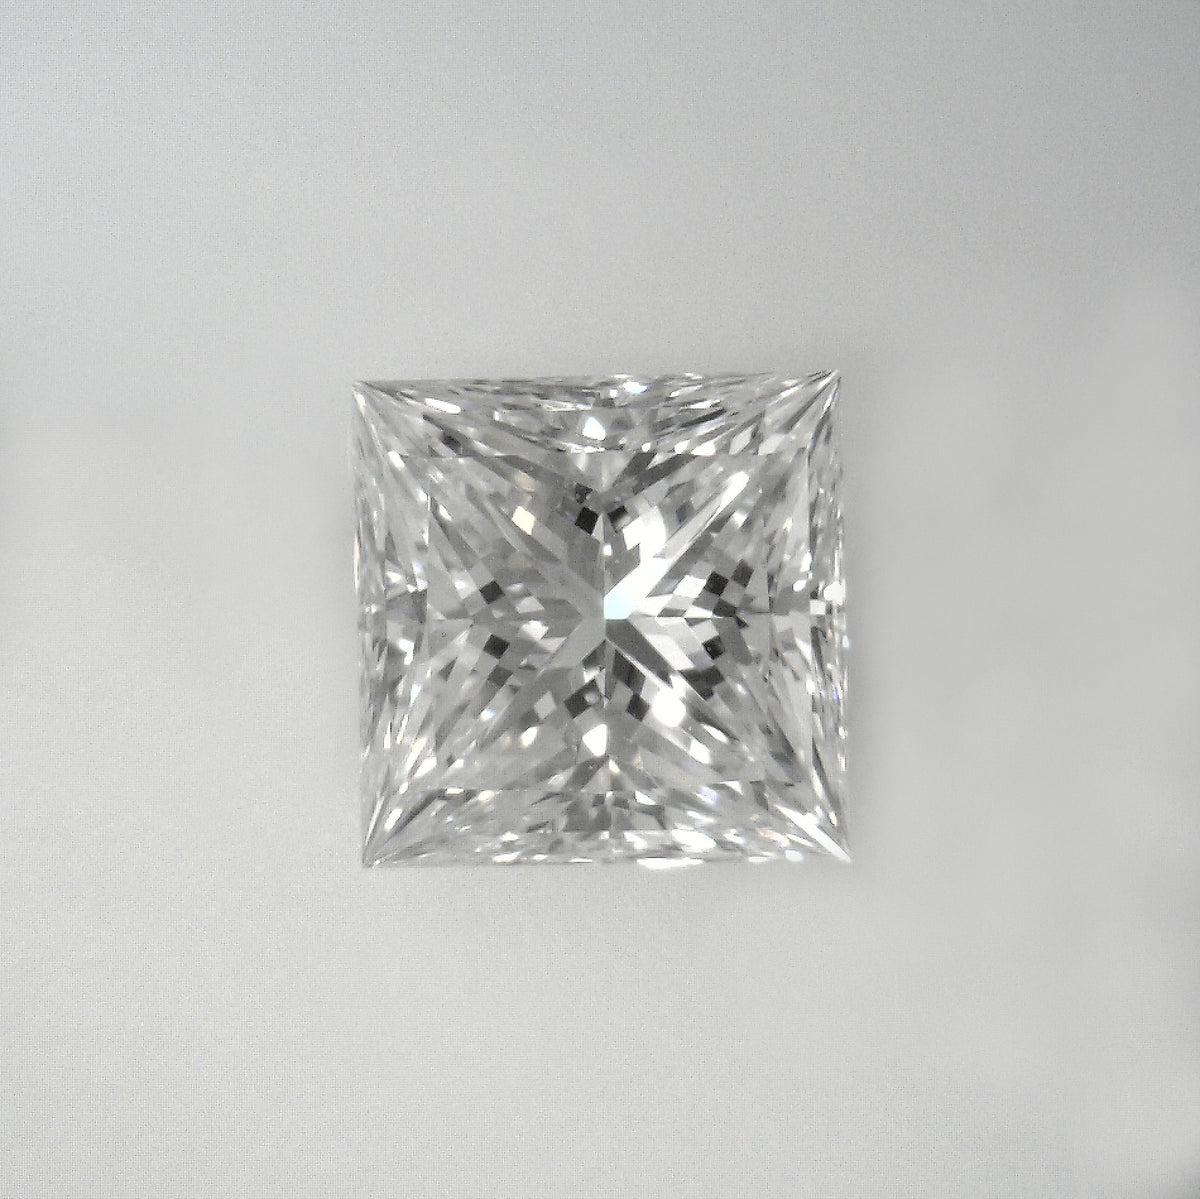 Certified  cut,  color,  clarity, 1.62 Ct Loose Diamonds